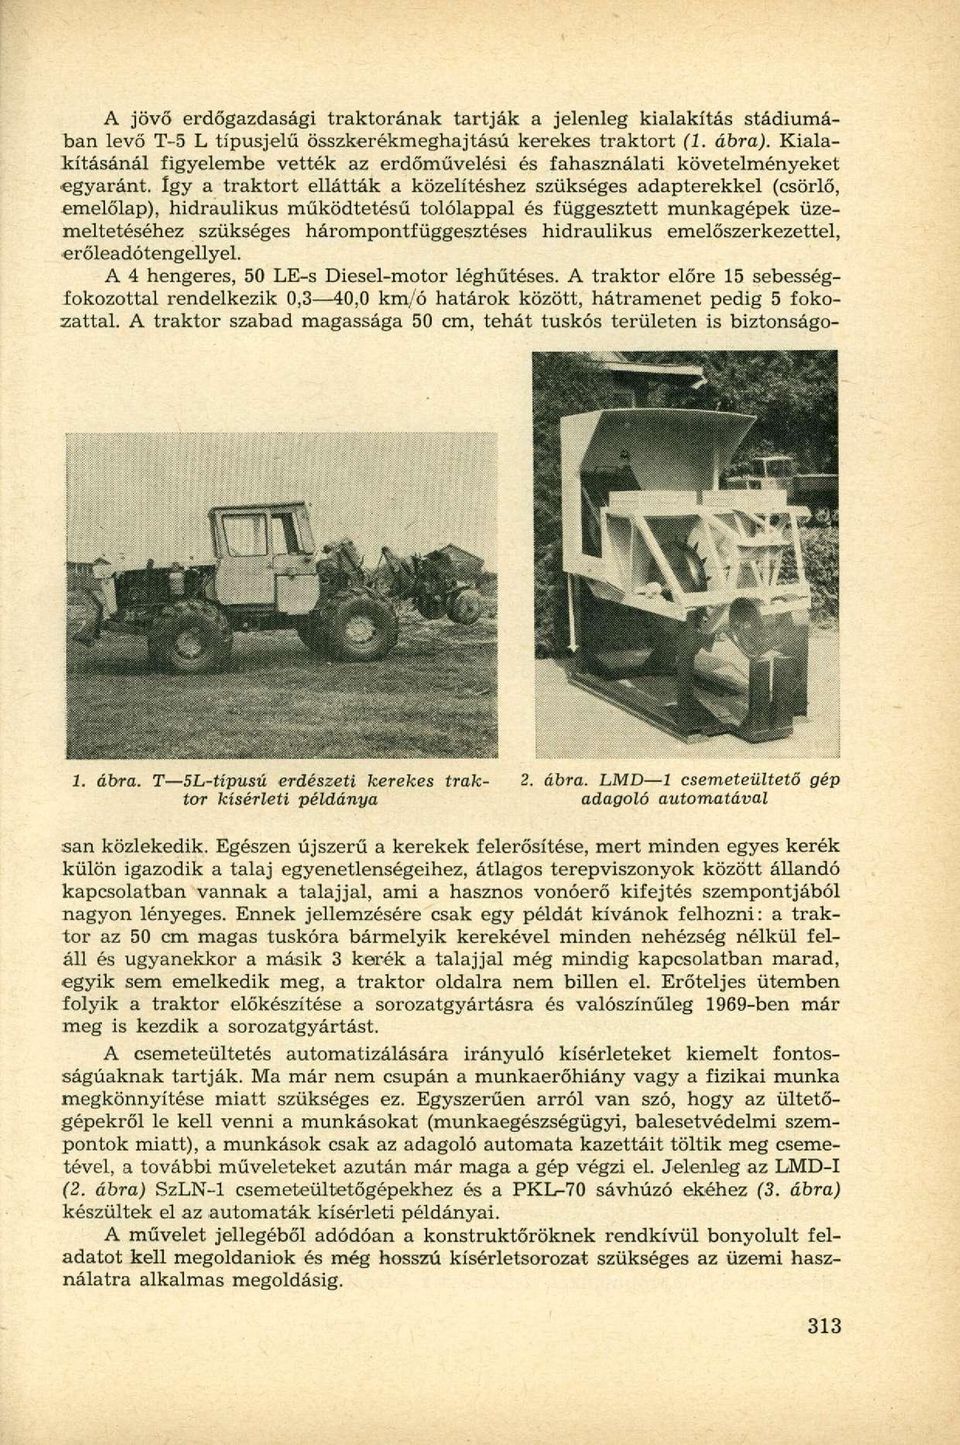 Így a traktort ellátták a közelítéshez szükséges adapterekkel (csörlő, emelőlap), hidraulikus működtetésű tolólappal és függesztett munkagépek üzemeltetéséhez szükséges hárompontfüggesztéses